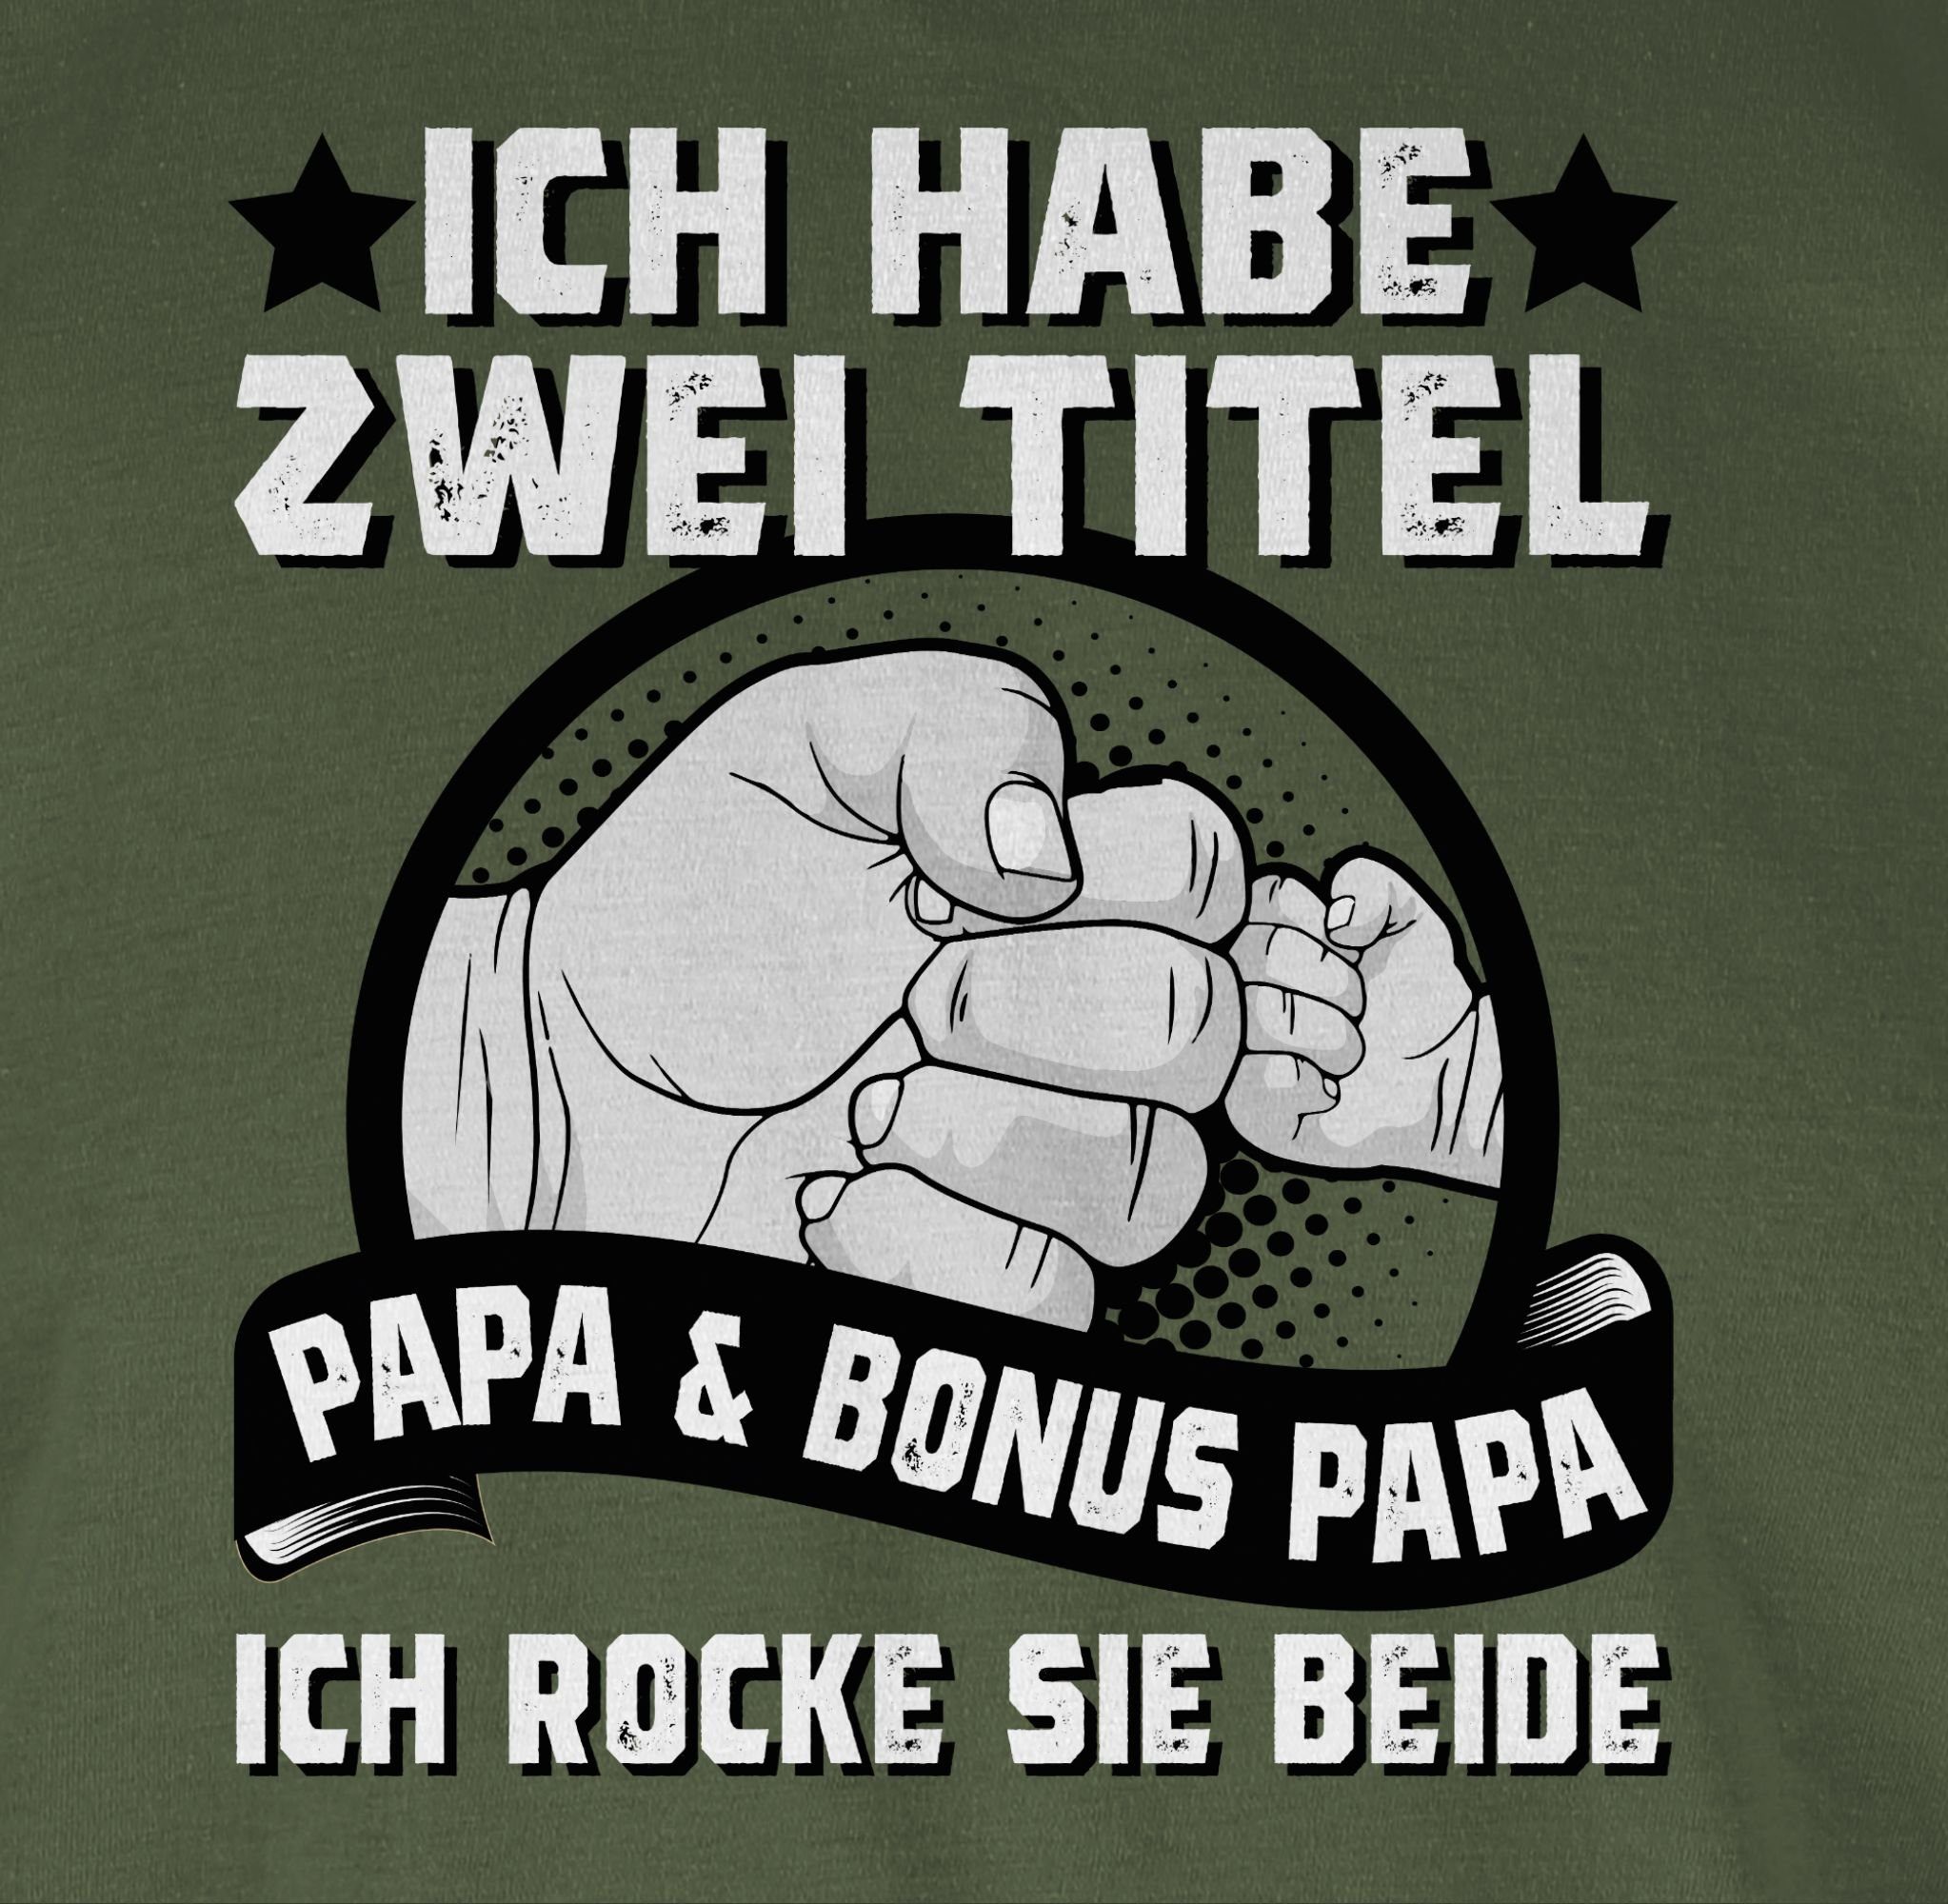 Stiefvater Shirtracer und Papa T-Shirt zwei Grün Papa Bonus Ich Army Vatertag habe Papa 3 Geschenk Titel für - I